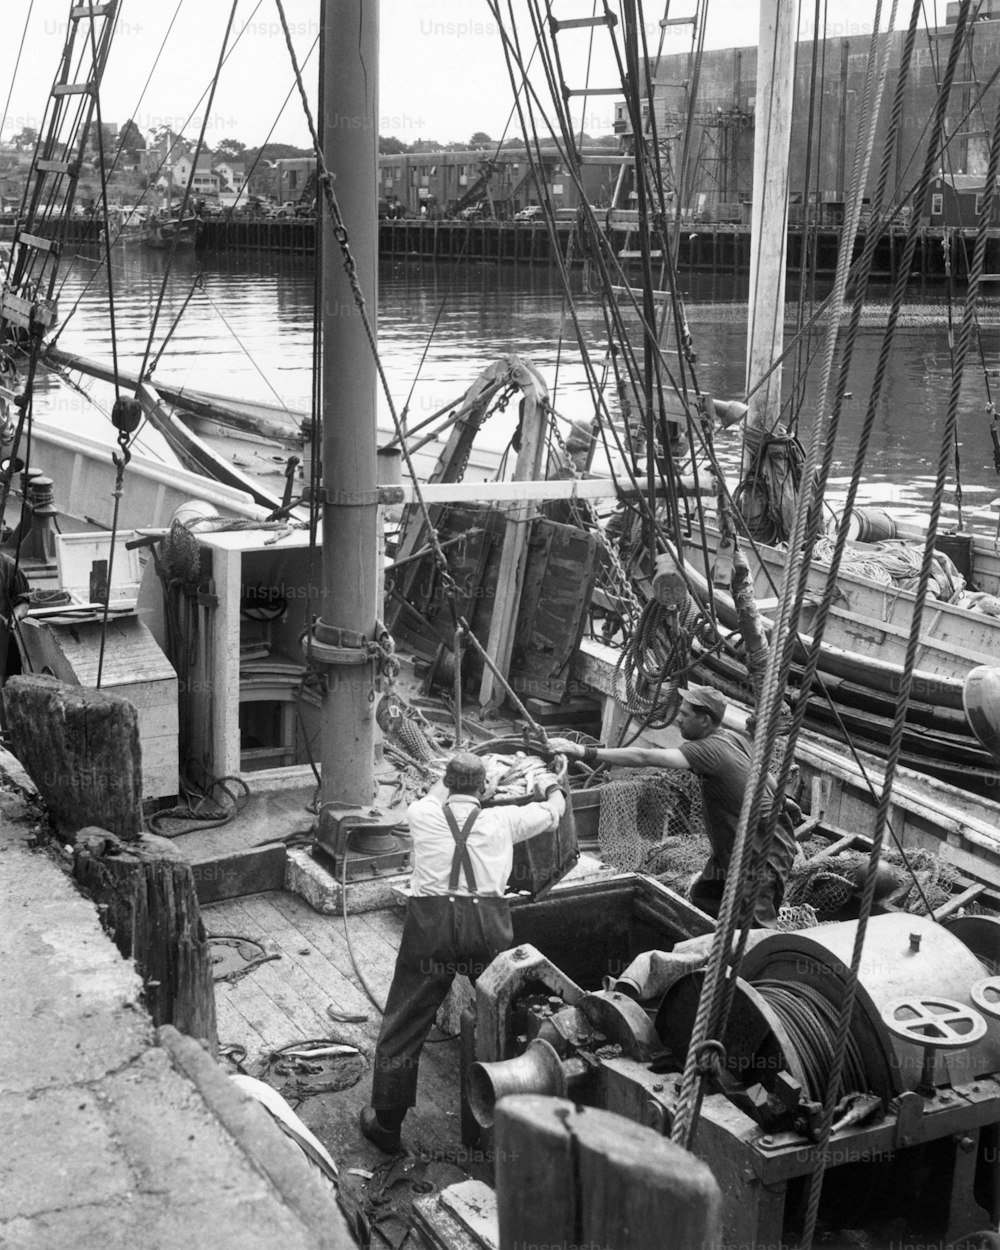 ESTADOS UNIDOS - CIRCA 1950s: Hombres trabajando en un barco de pesca.